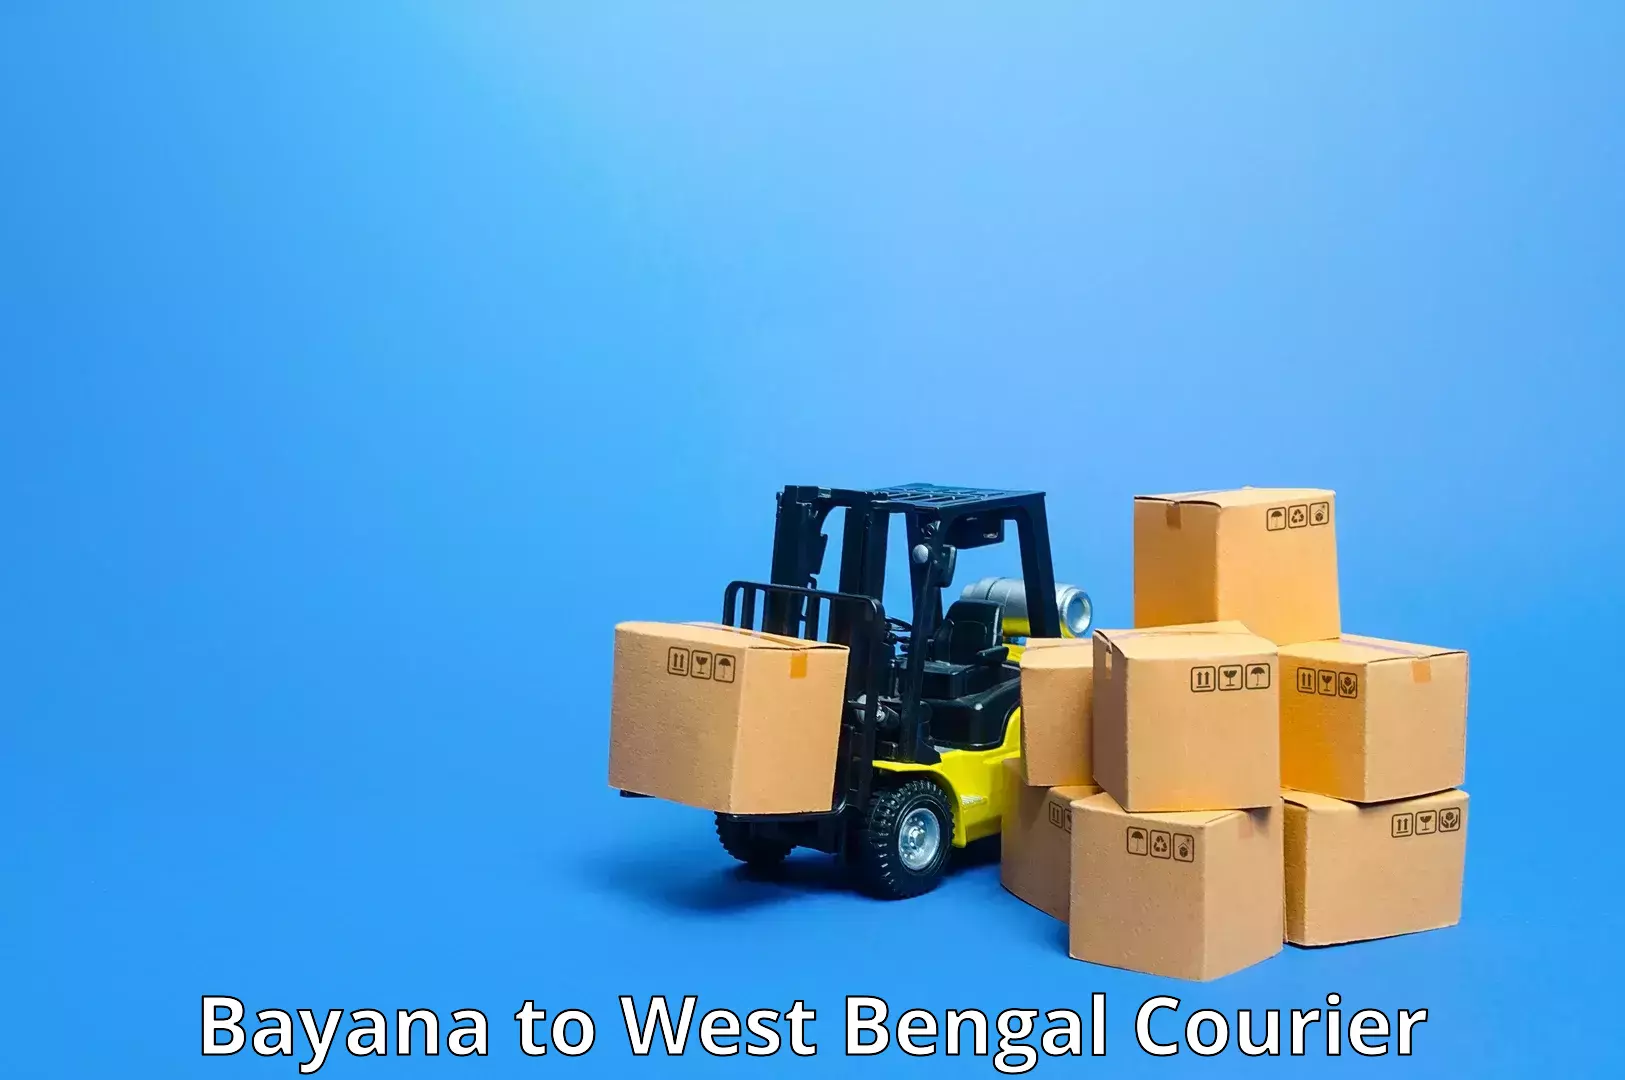 Doorstep delivery service Bayana to Algarah